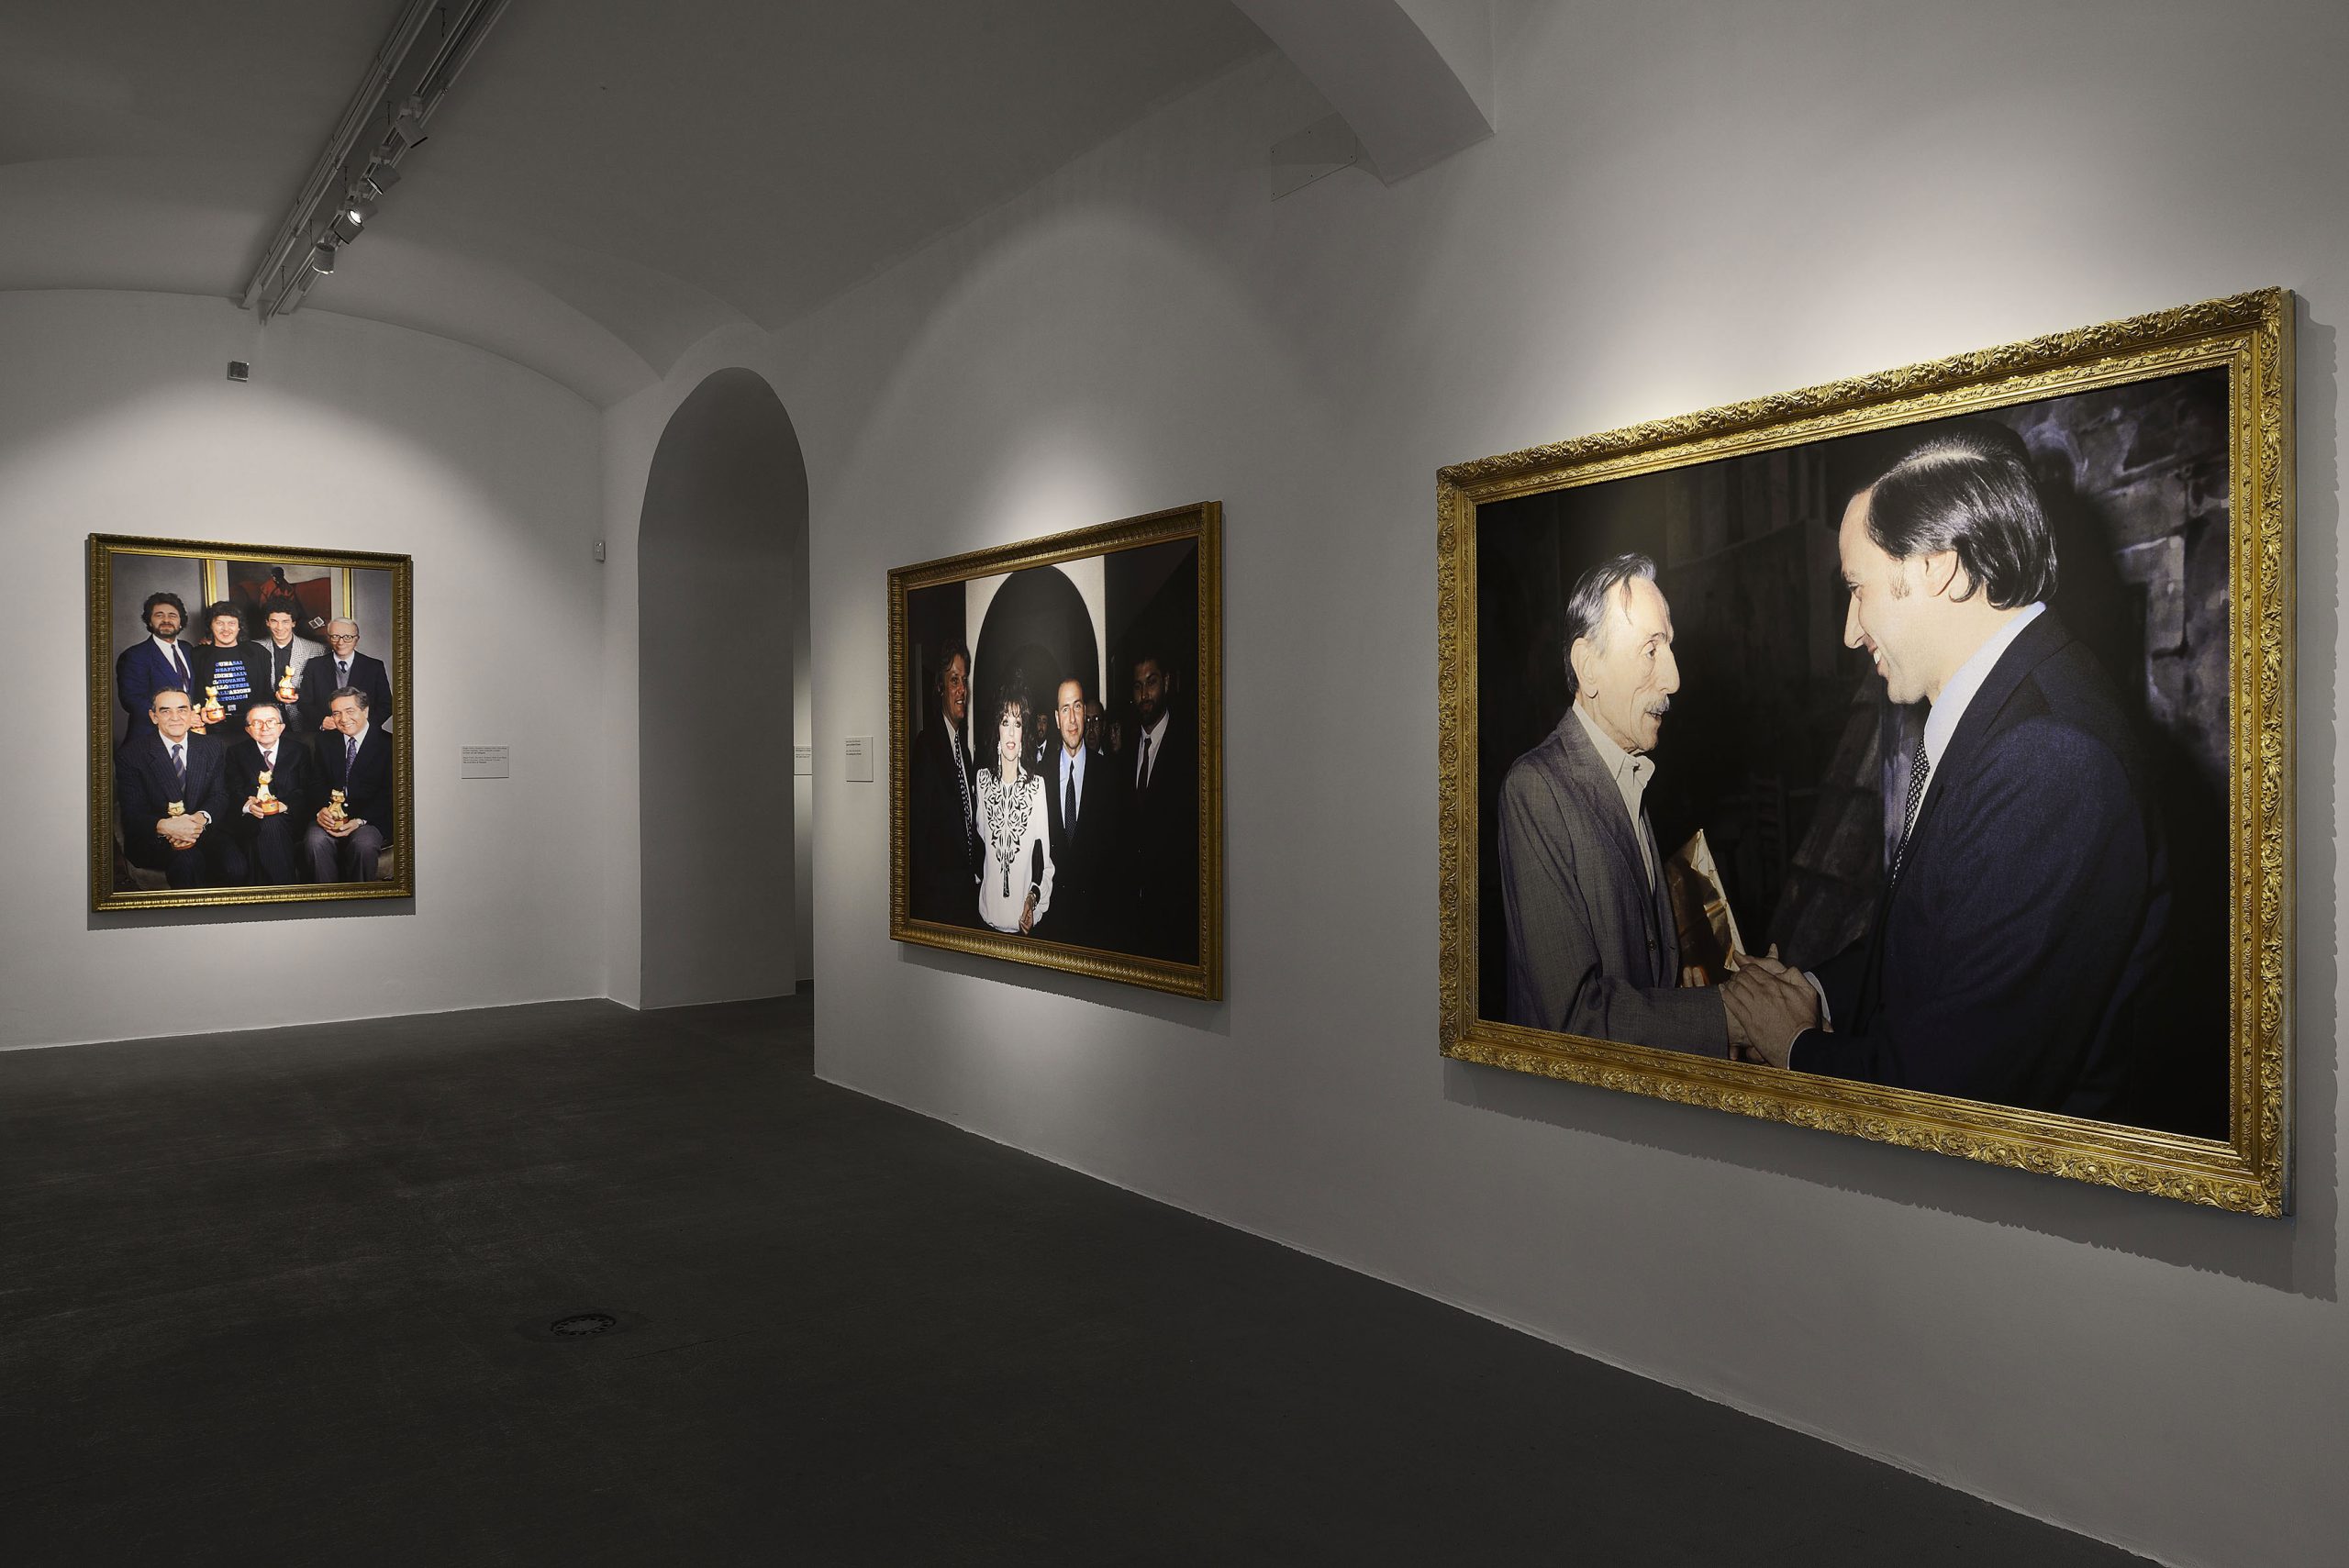 Francesco Vezzoli, Party Politics. Installation view at Fondazione Giuliani, photo by Roberto Apa